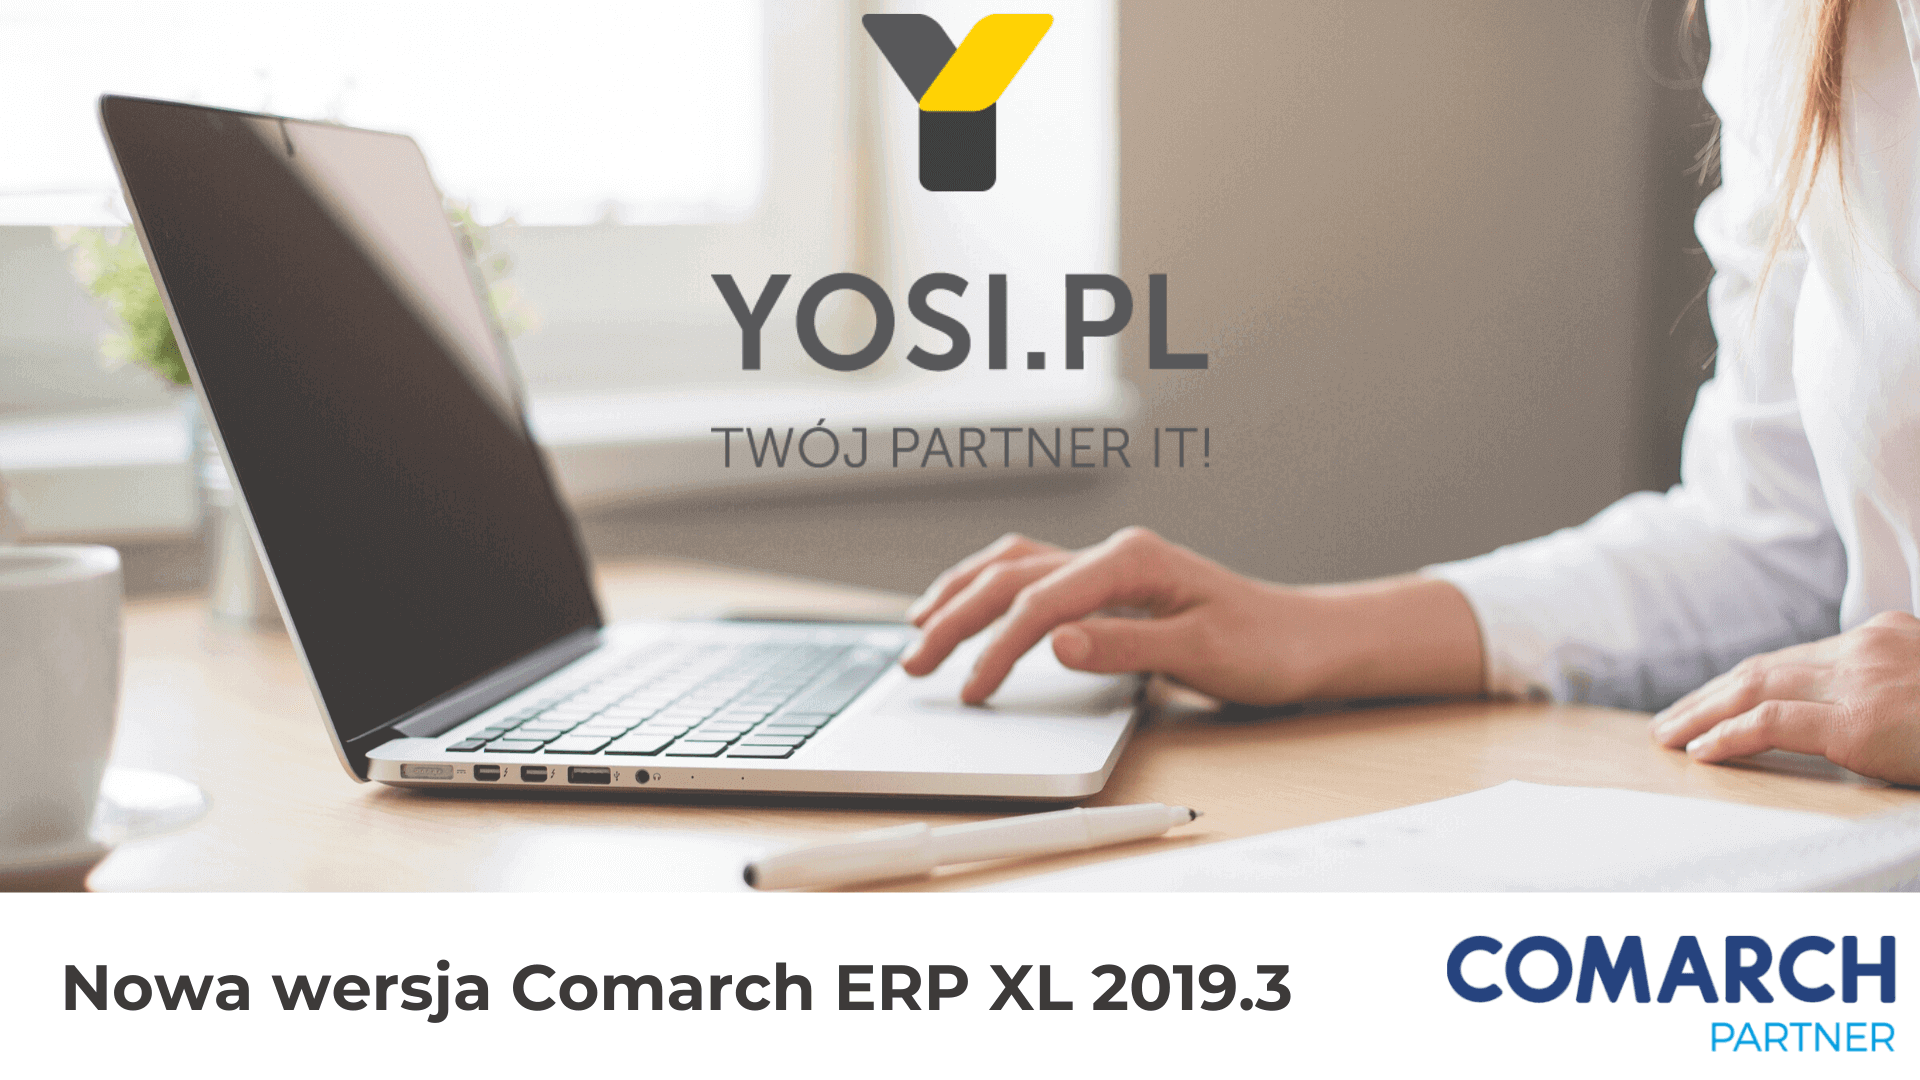 Nowa wersja Comarch XL - YOSI.PL Twój Partner )